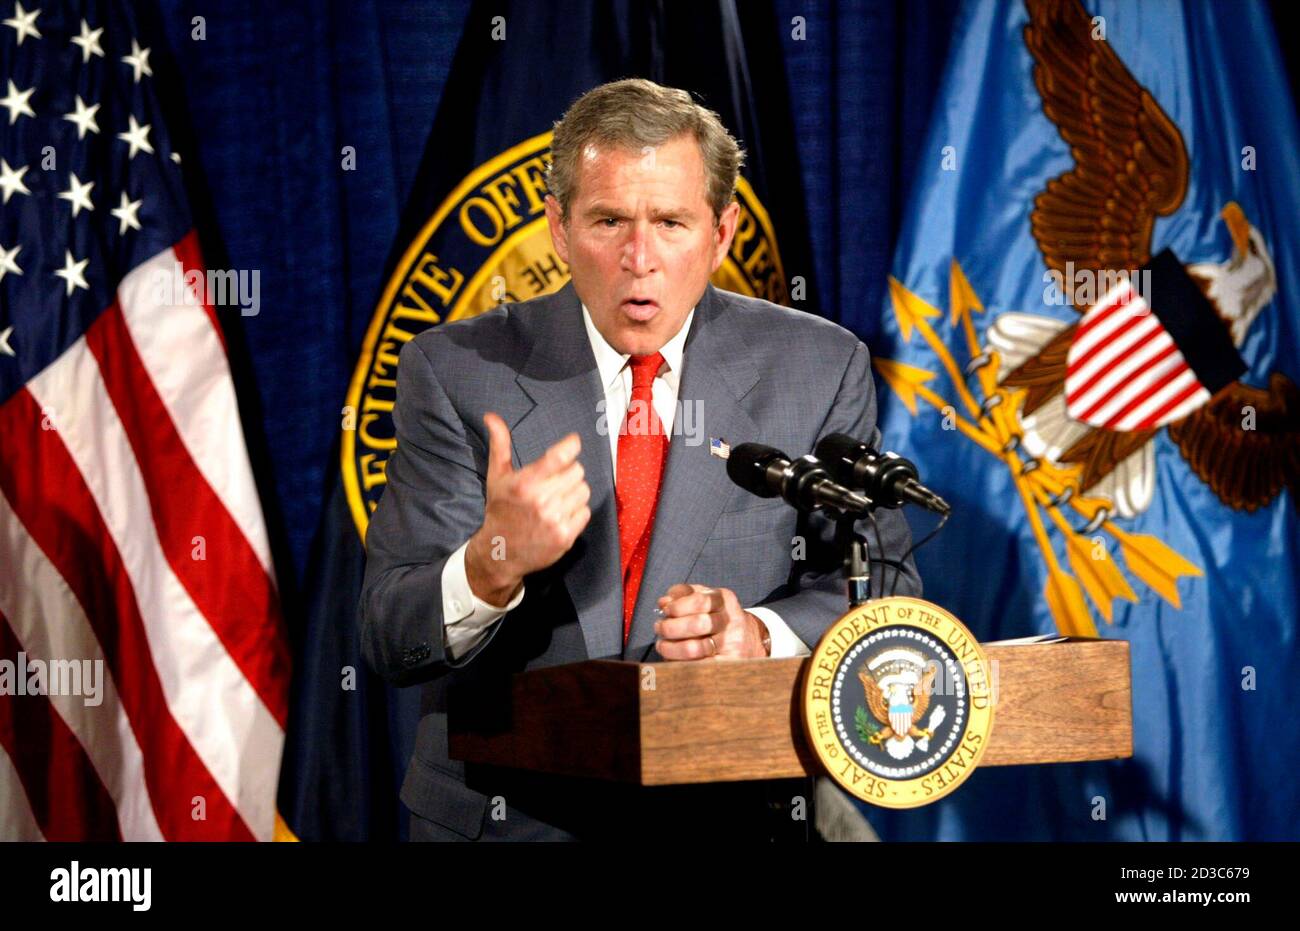 El presidente George W. Bush habla sobre su plan de estímulo económico durante una visita a la National Flag Company en Alexandria, Virginia, el 9 de enero de 2003. Bush usó la visita a esta pequeña compañía para defender su plan de reducción de impuestos de $670 mil millones. REUTERS/Kevin Lamarque KL Foto de stock